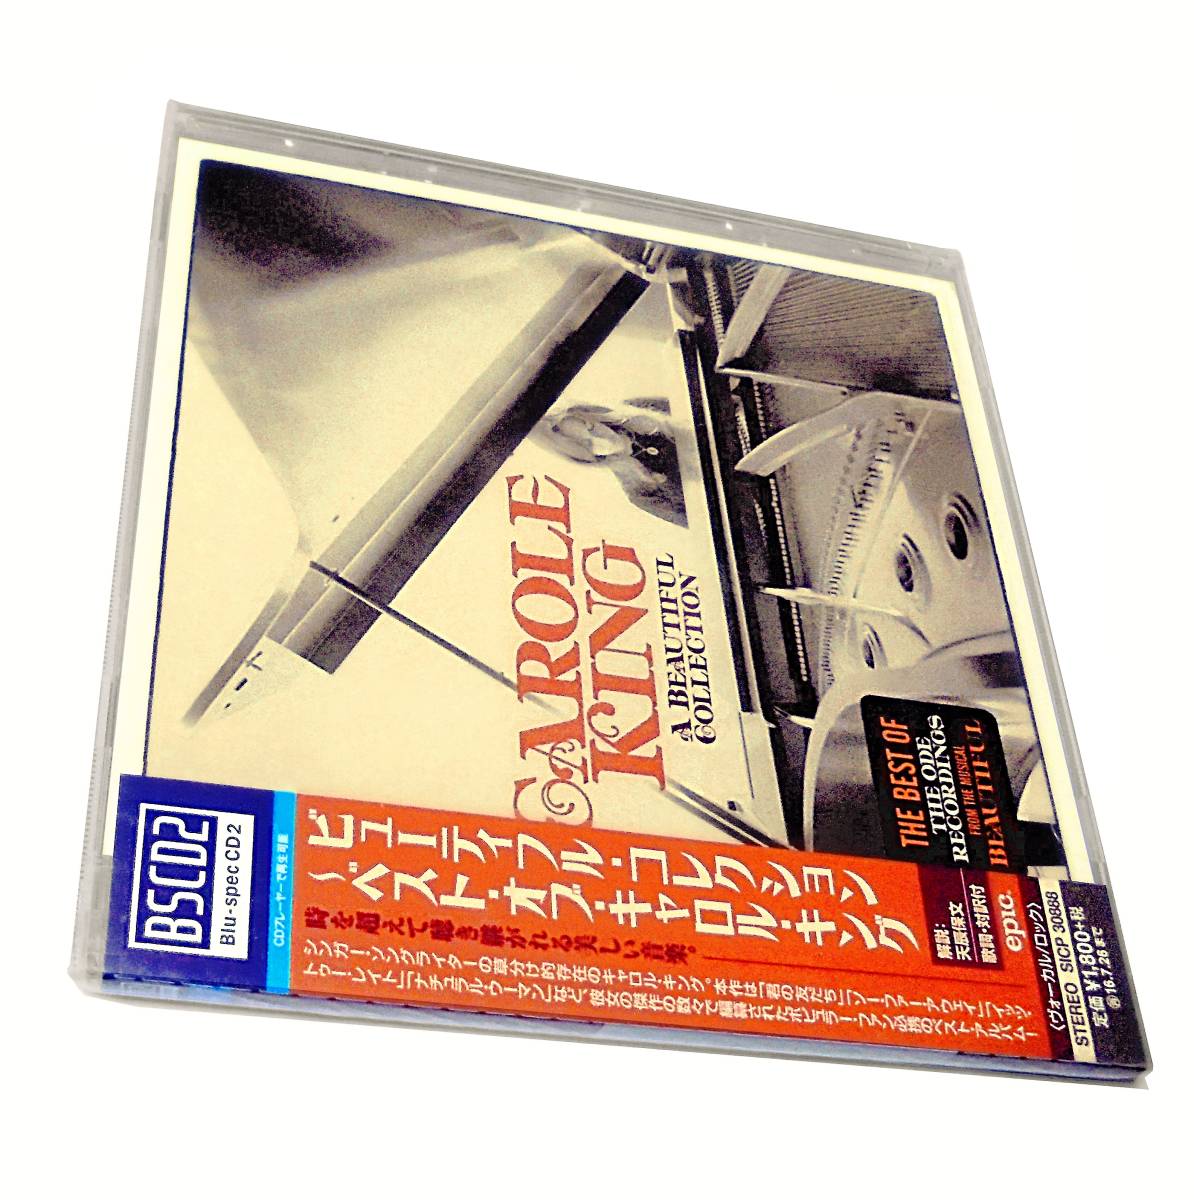 新品Blu spec CD2James Taylor Joni Mitchell Tom Scott Danny Kortchmar Beautiful Collection Best Ofキャロルキング ベストGoffin&Kingの画像1